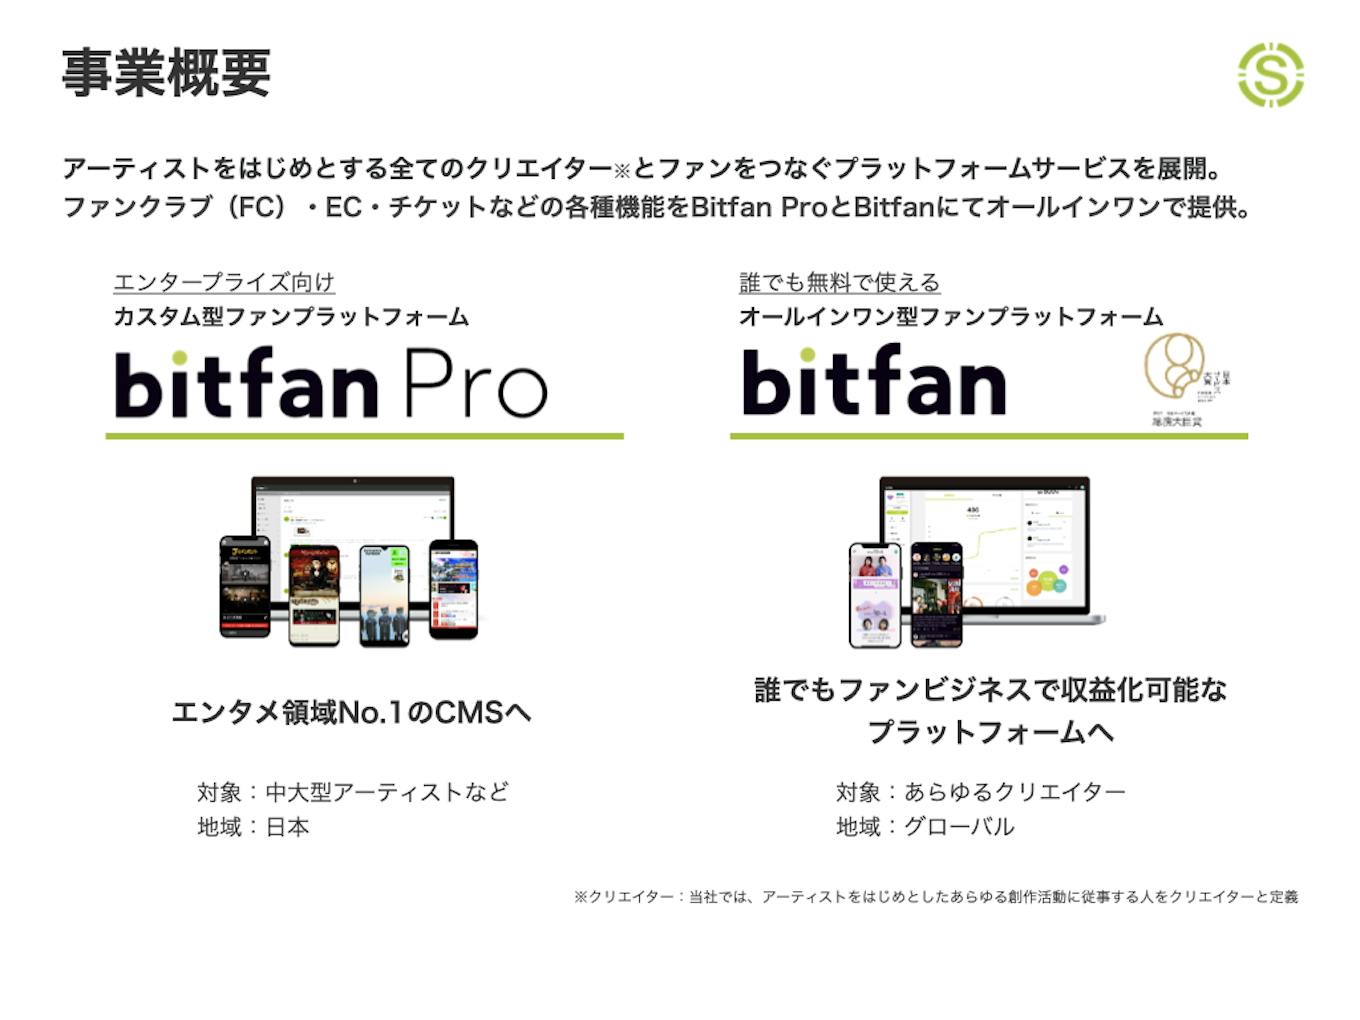 クリエイターとファンをつなぐプラットフォーム『Bitfan』、『Bitfan Pro』を提供